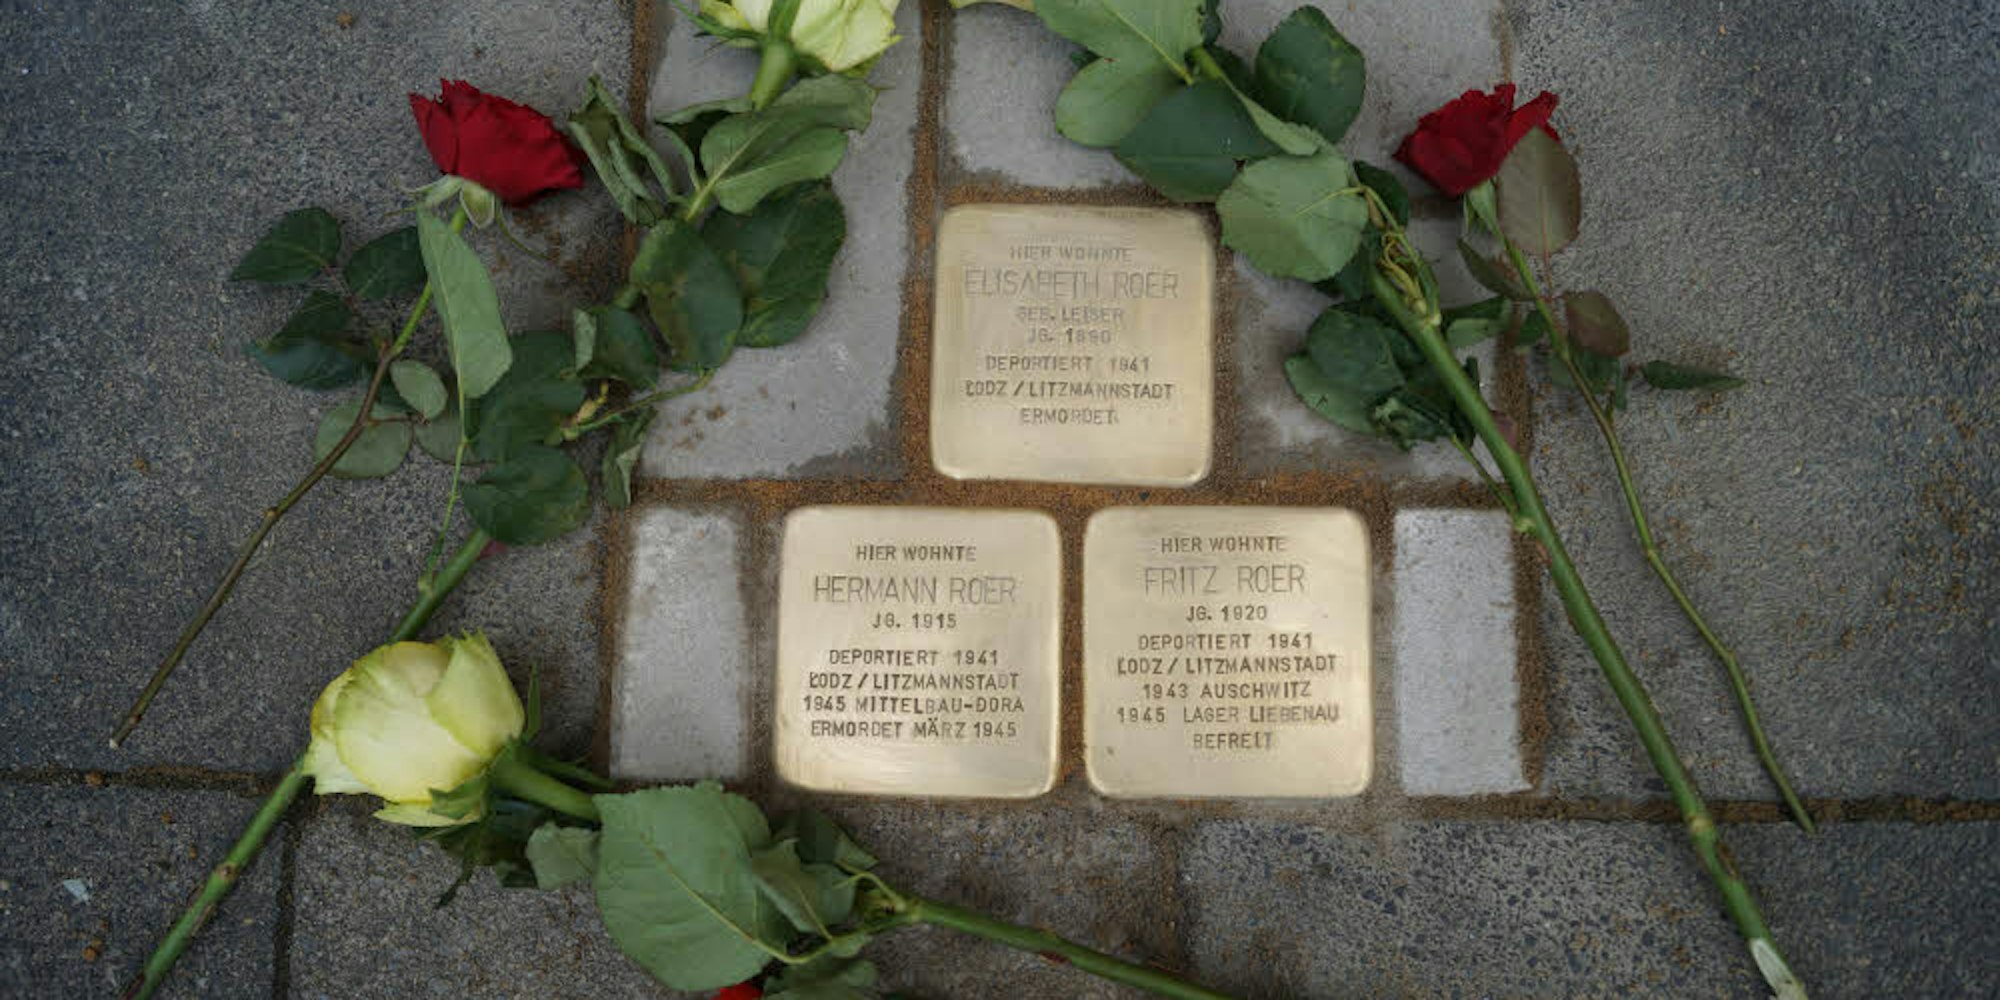 Elisabeth Roer, geborene Leiser, wurde in Litzmannstadt, heute Lodz, ermordet. Hermann Roer starb noch kurz vor Kriegsende. Fritz Roer überlebte das KZ und wurde 1945 befreit.